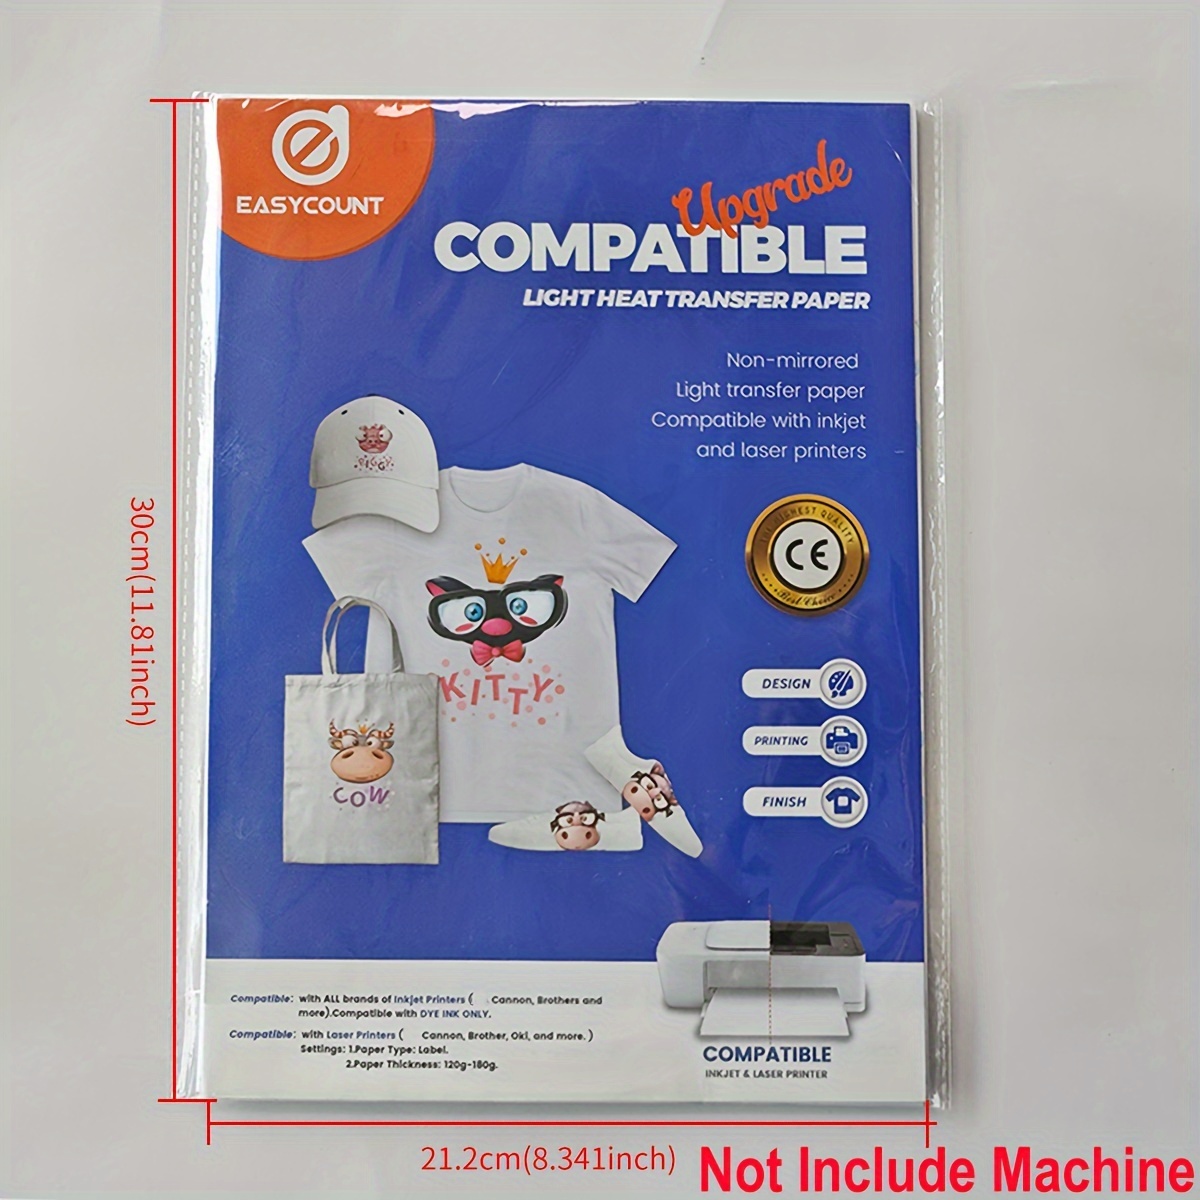 Heat Press Machines 110v Easypress Mini Heat Press Machine T - Temu